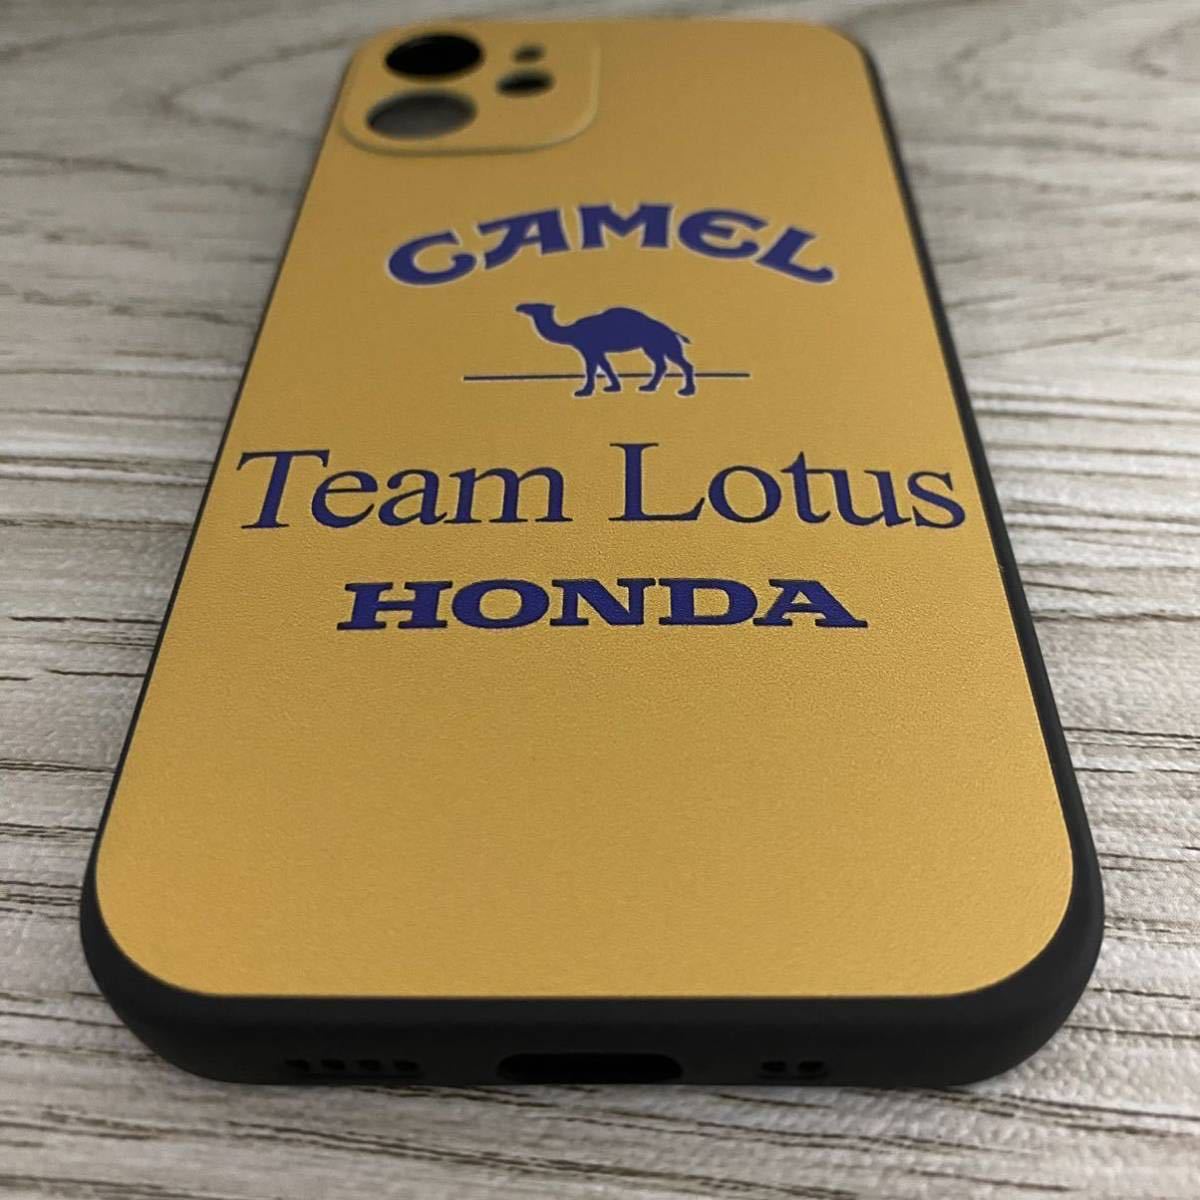  Camel Lotus Honda iPhone 12 mini кейс F1 i-ll тонн * Senna смартфон 